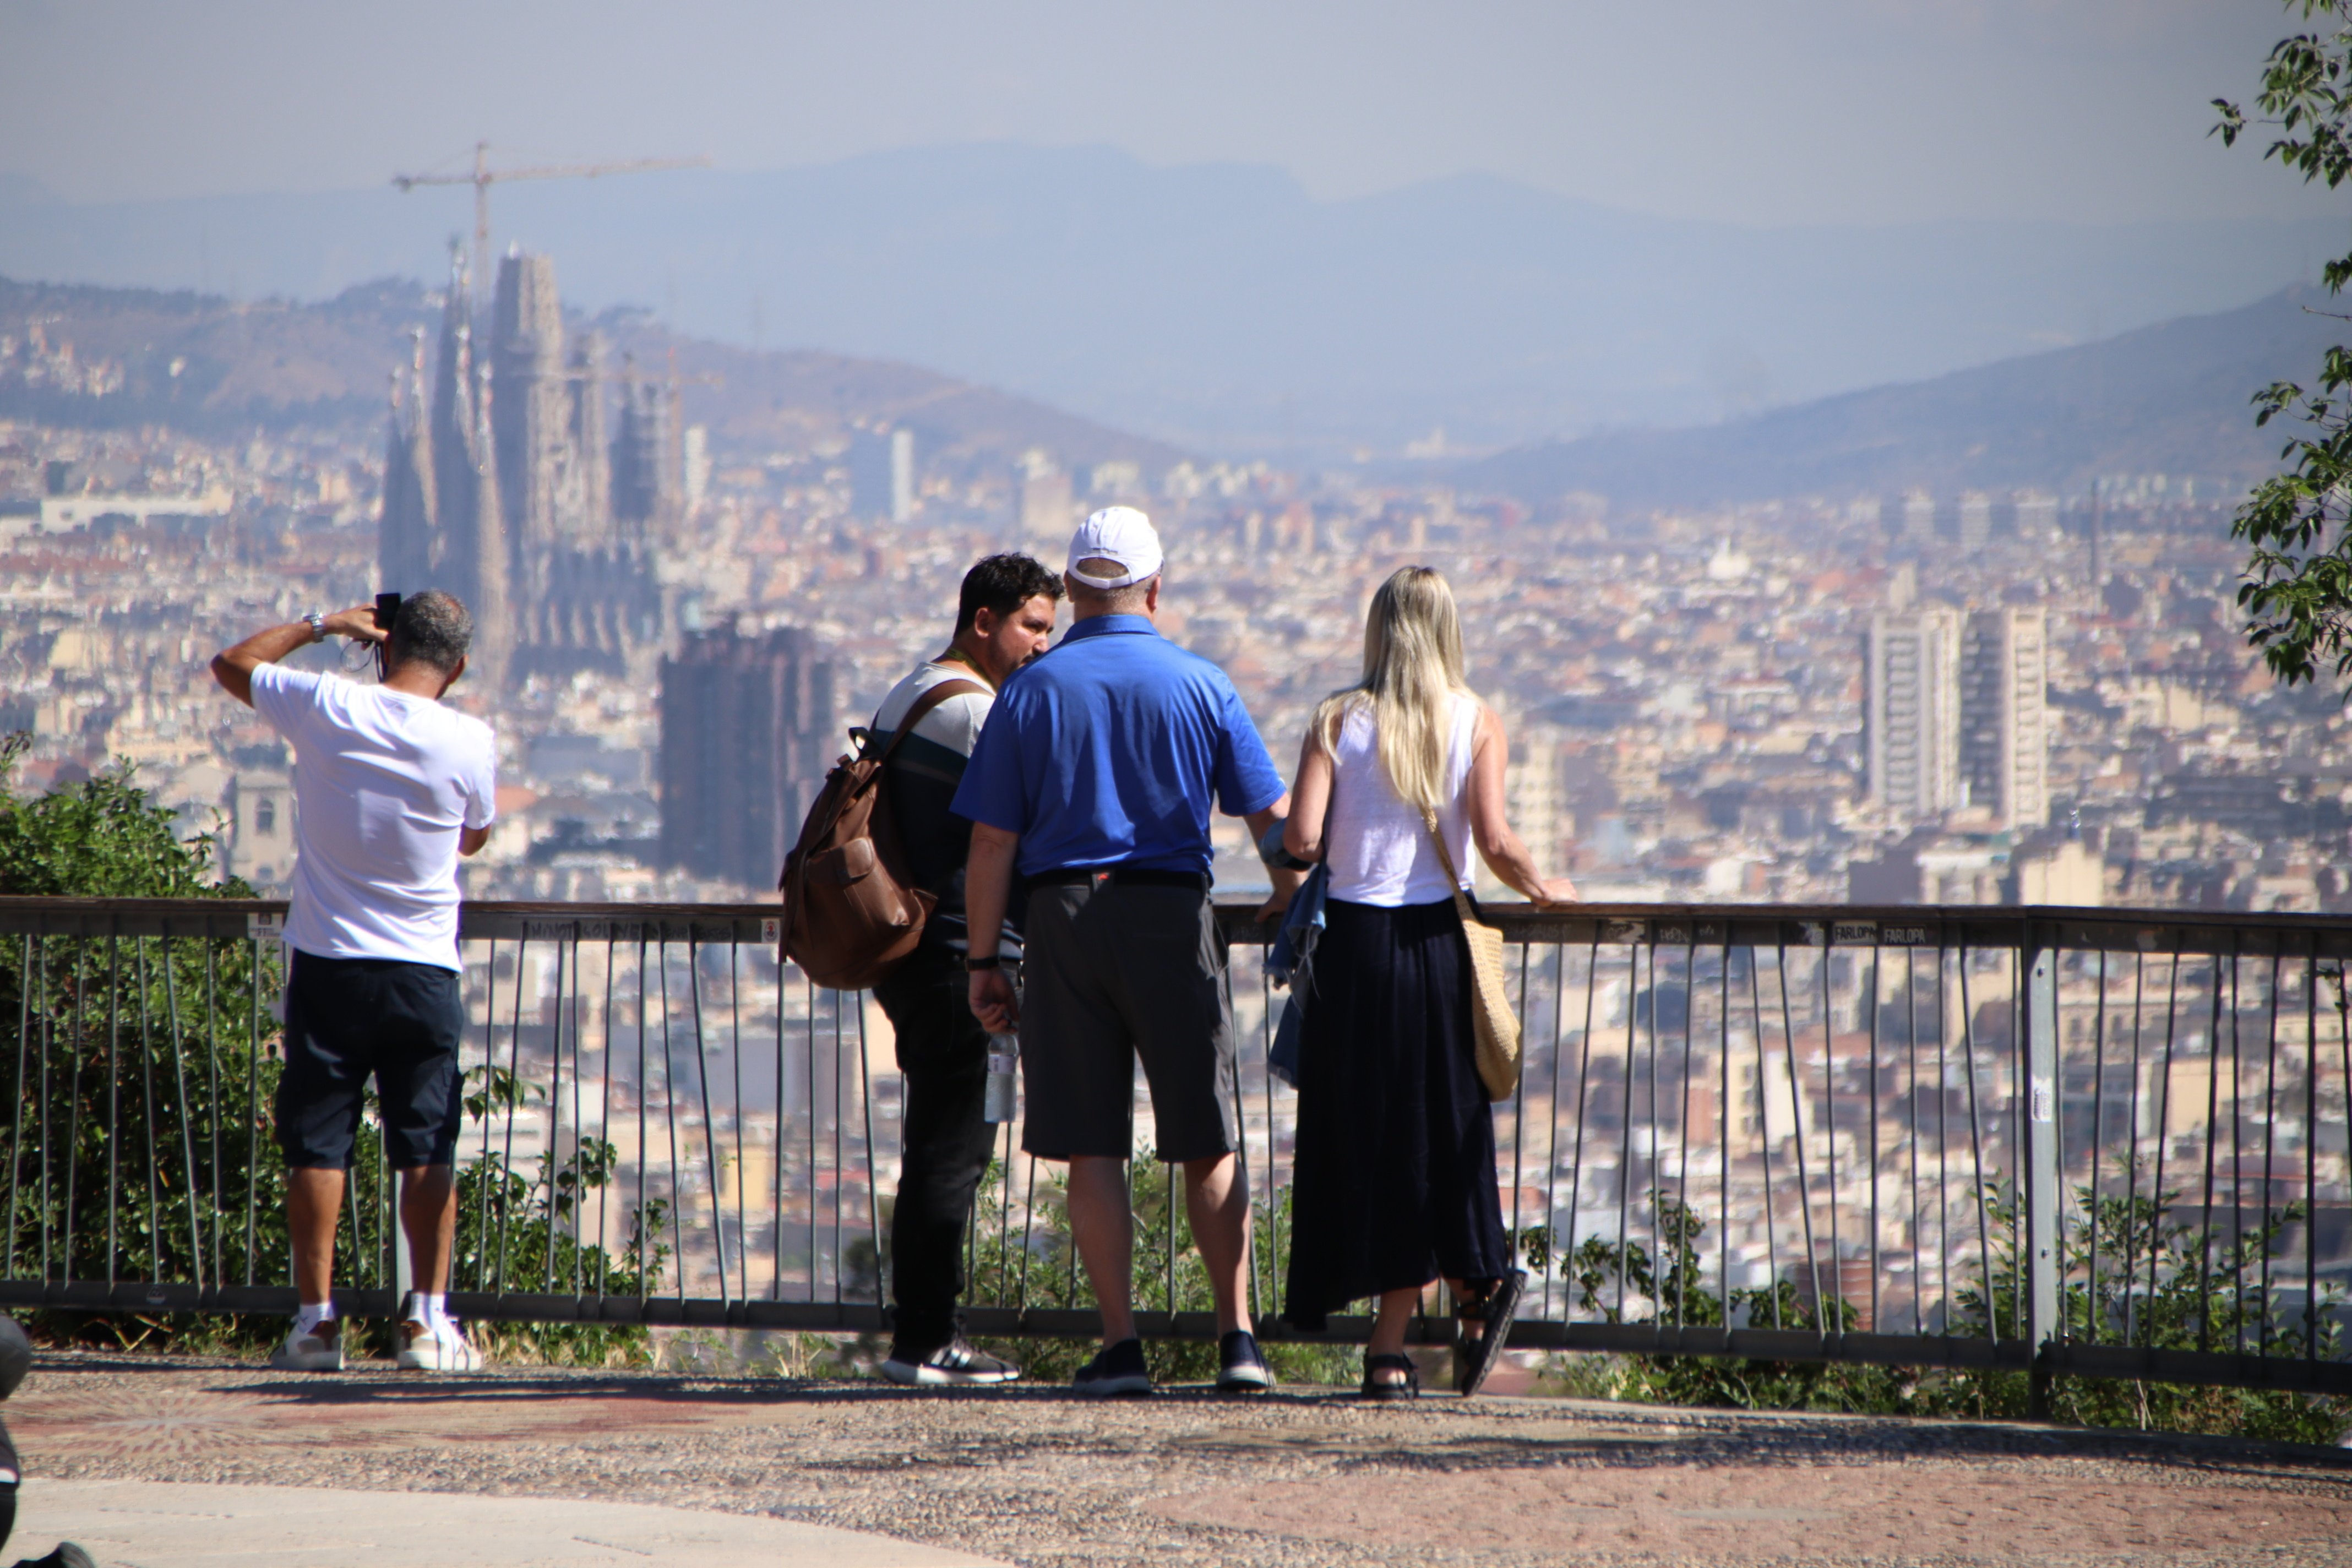 Barcelona recibe un 6,9% menos turistas que antes de la pandemia, pero su gasto crece un 14,7%